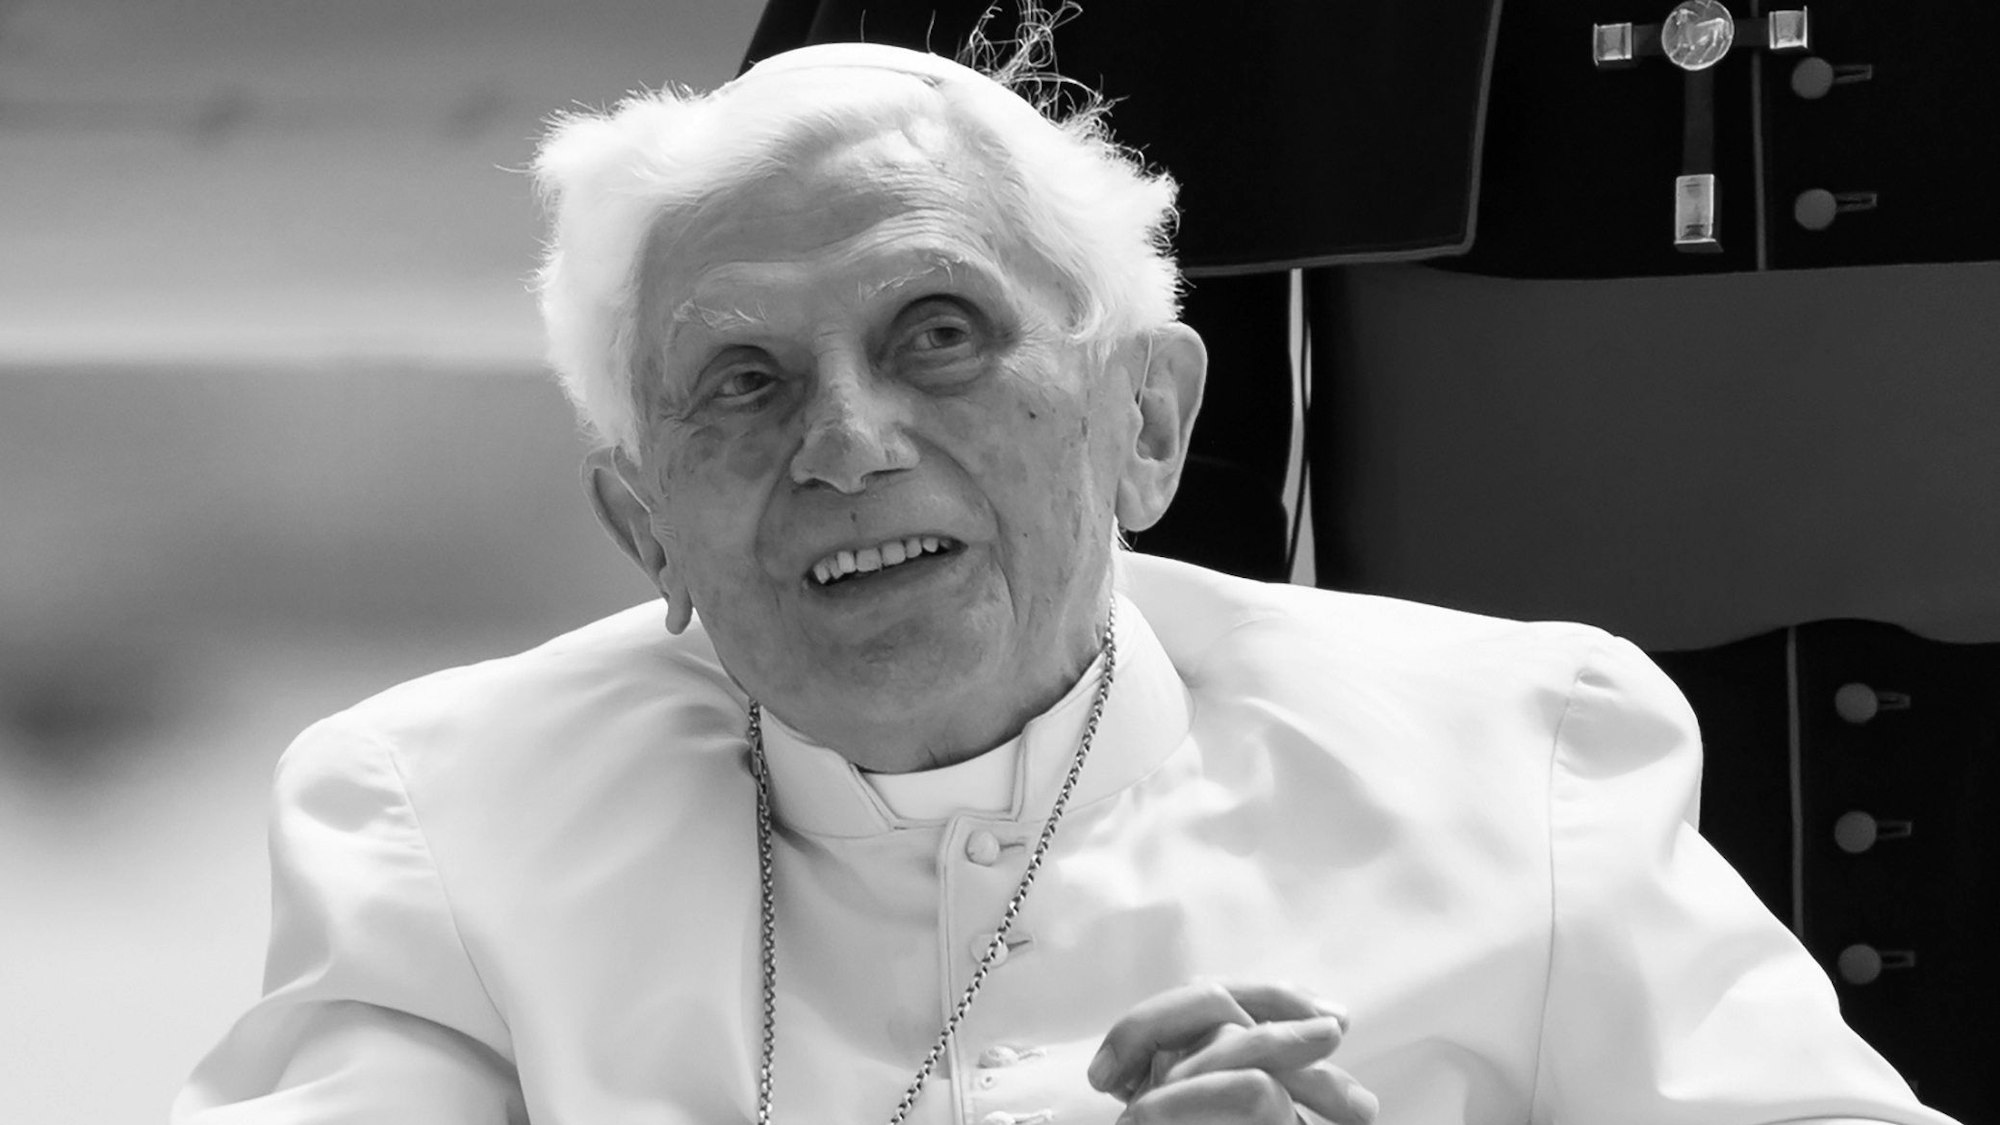 Der emeritierte Papst Benedikt XVI. kommt am Flughafen München zu seinem Flugzeug. (Archivbild)